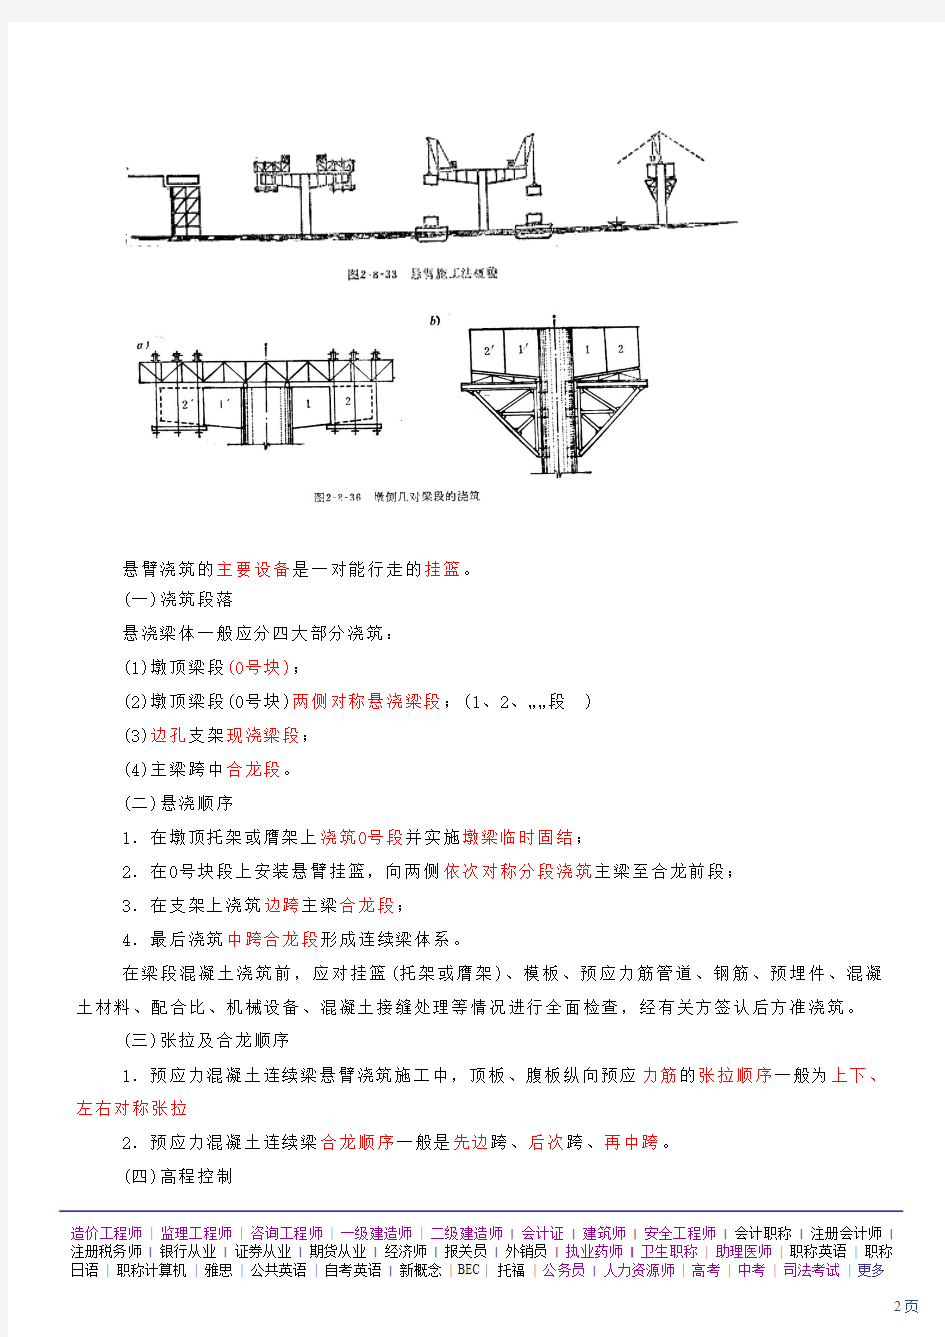 第8讲 城市桥涵工程(四)